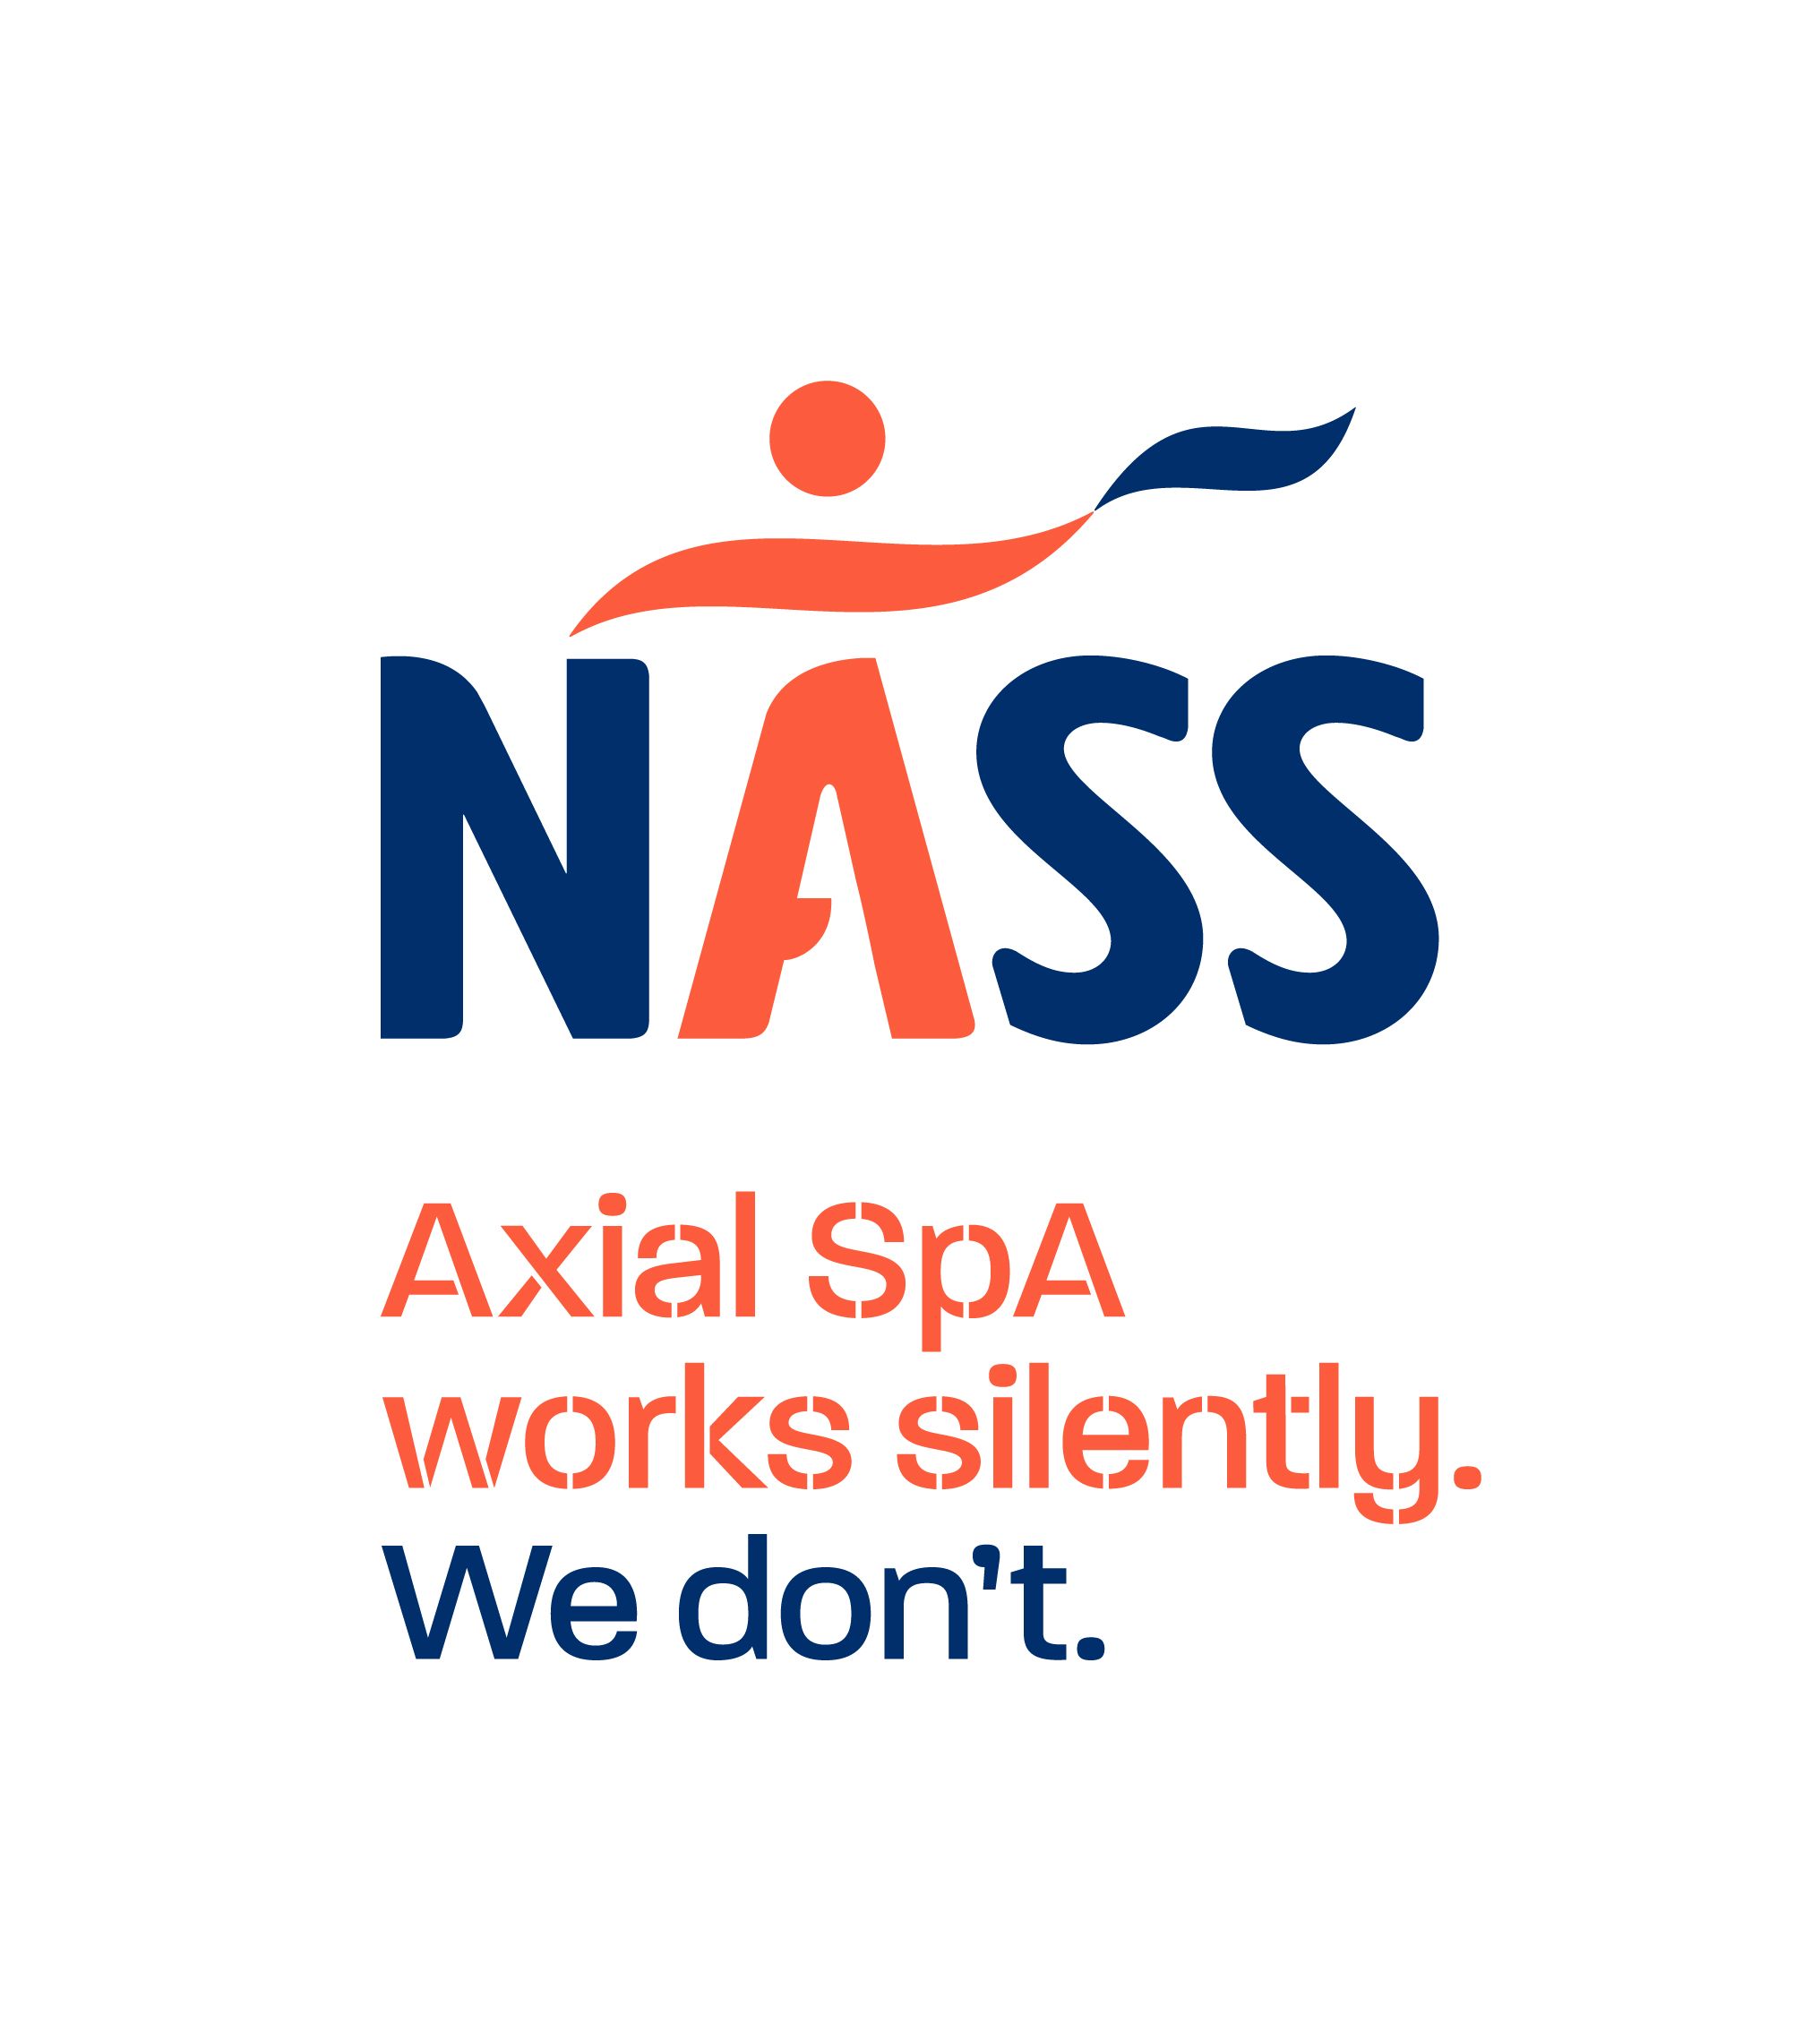 NASS association logo